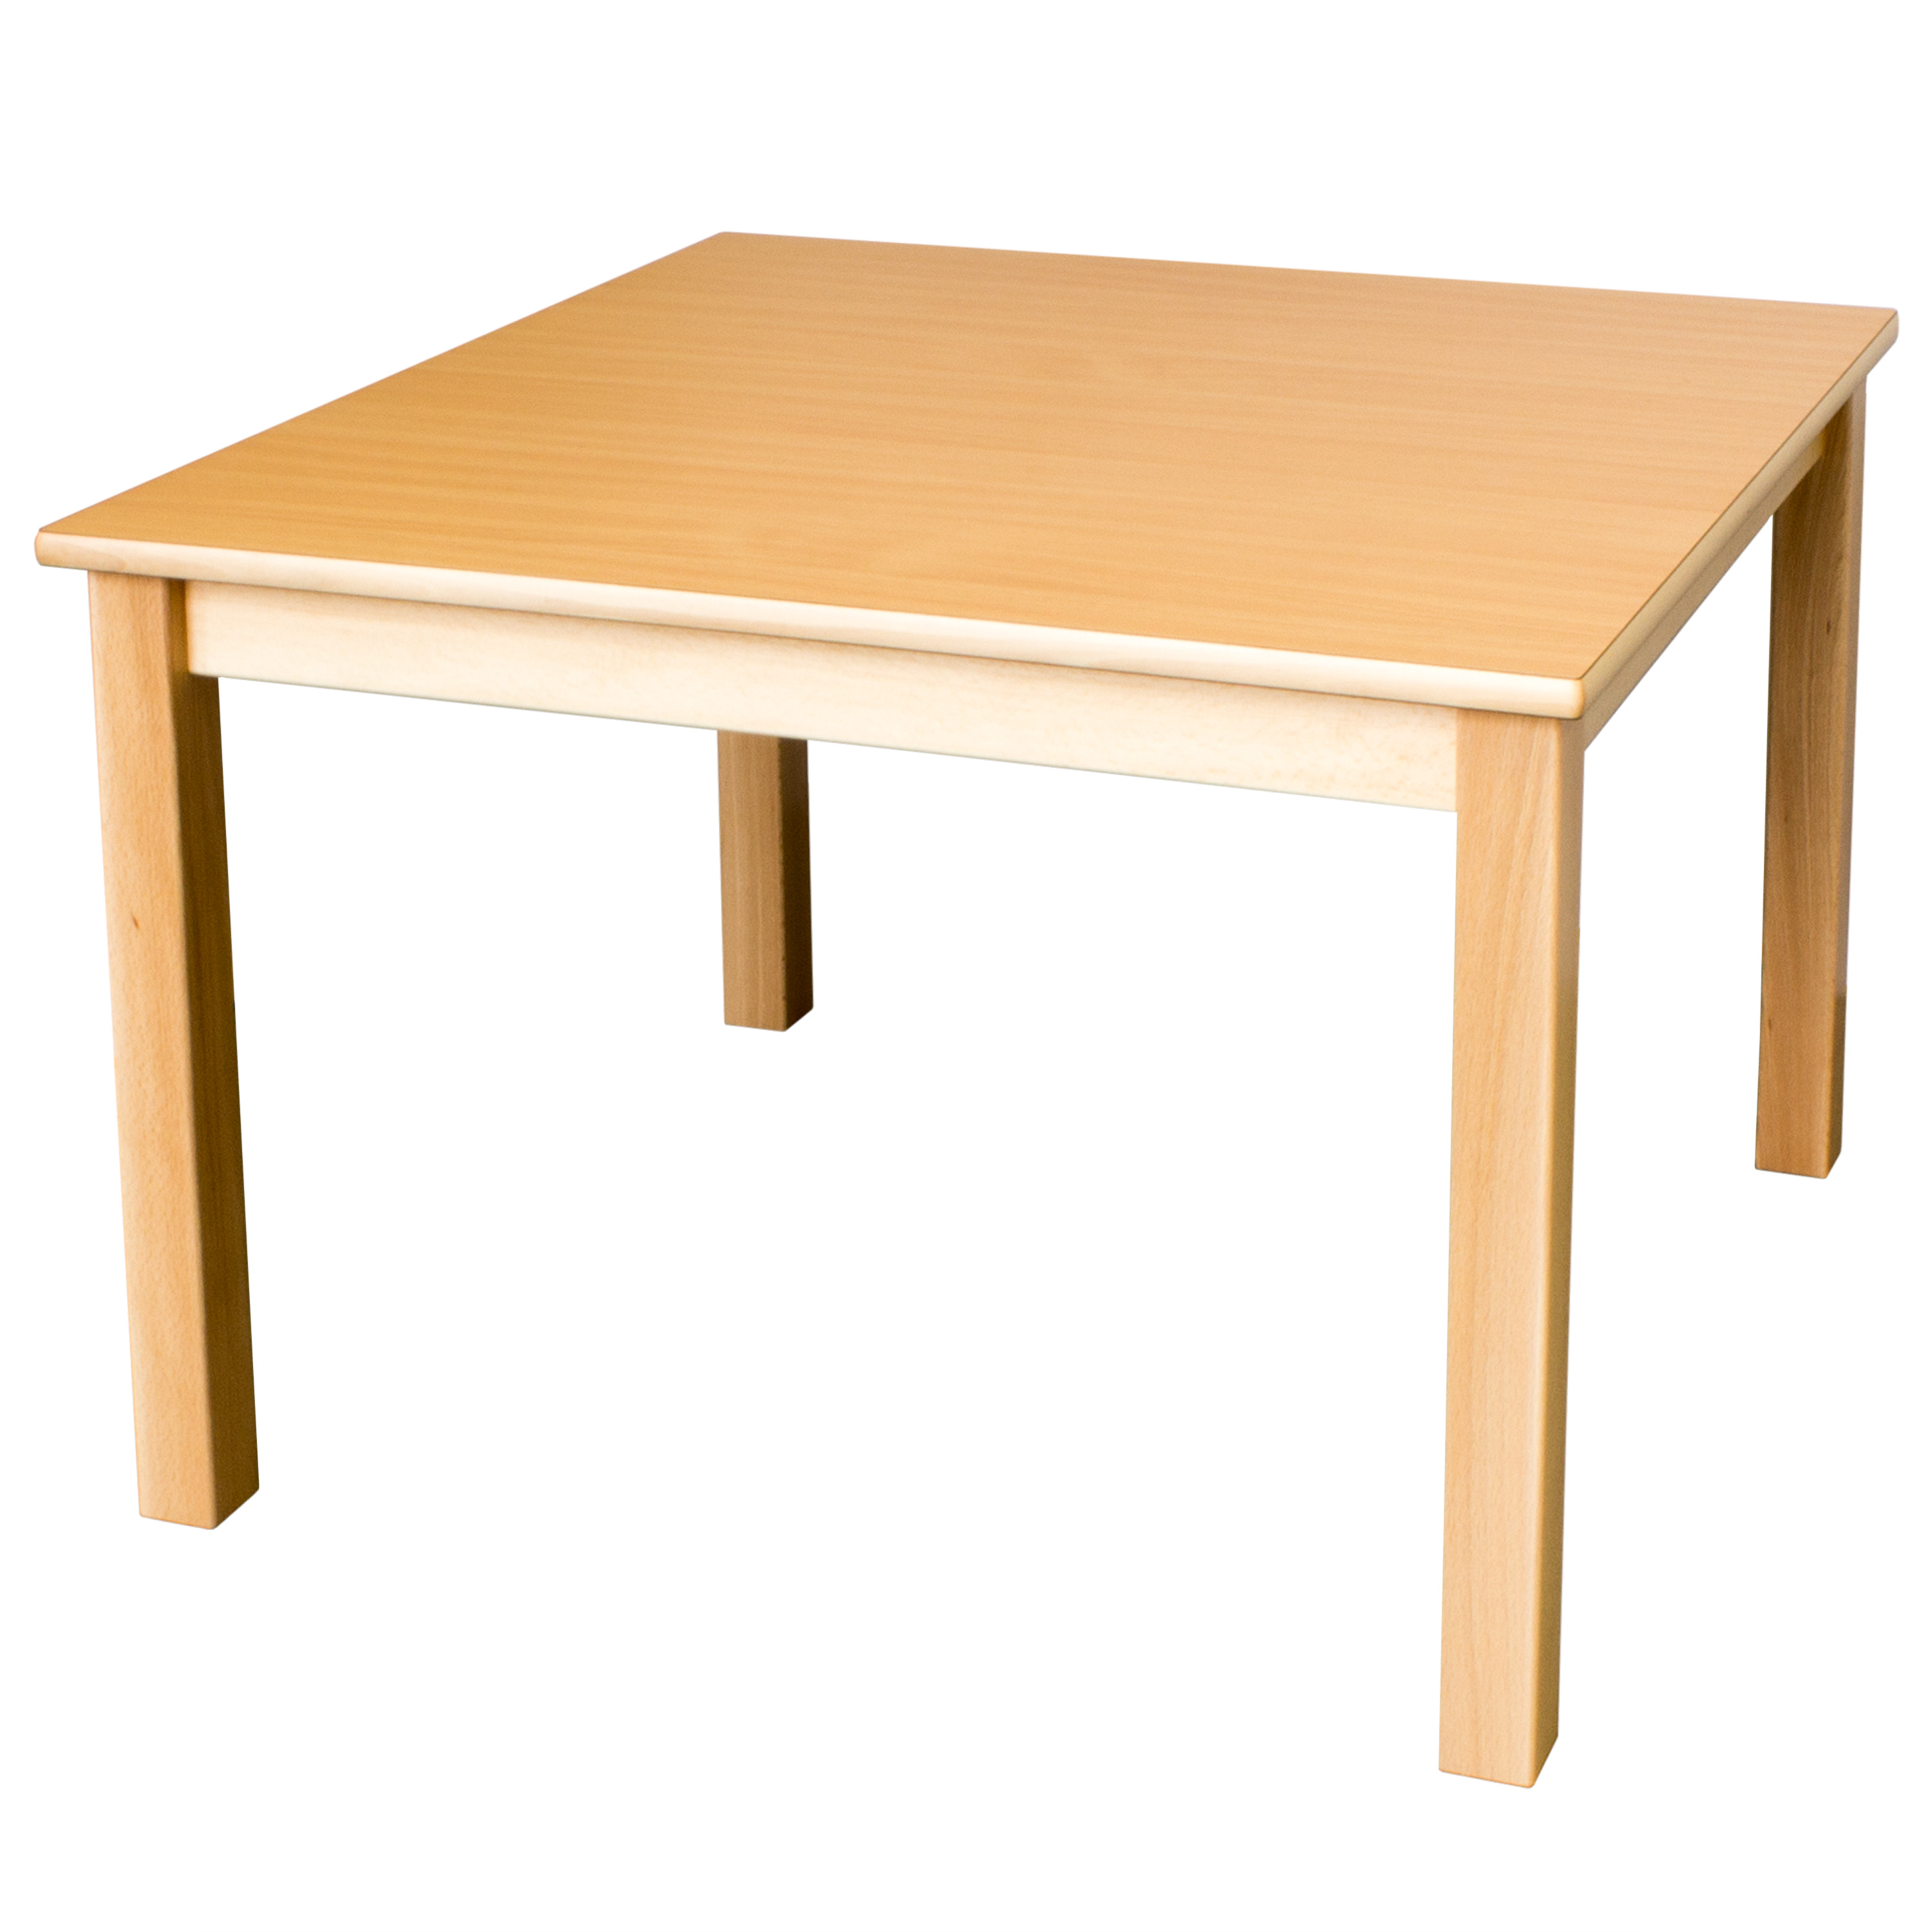 Quadrattisch in der Größe, 80 x 80 cm, Tischhöhe 64 cm